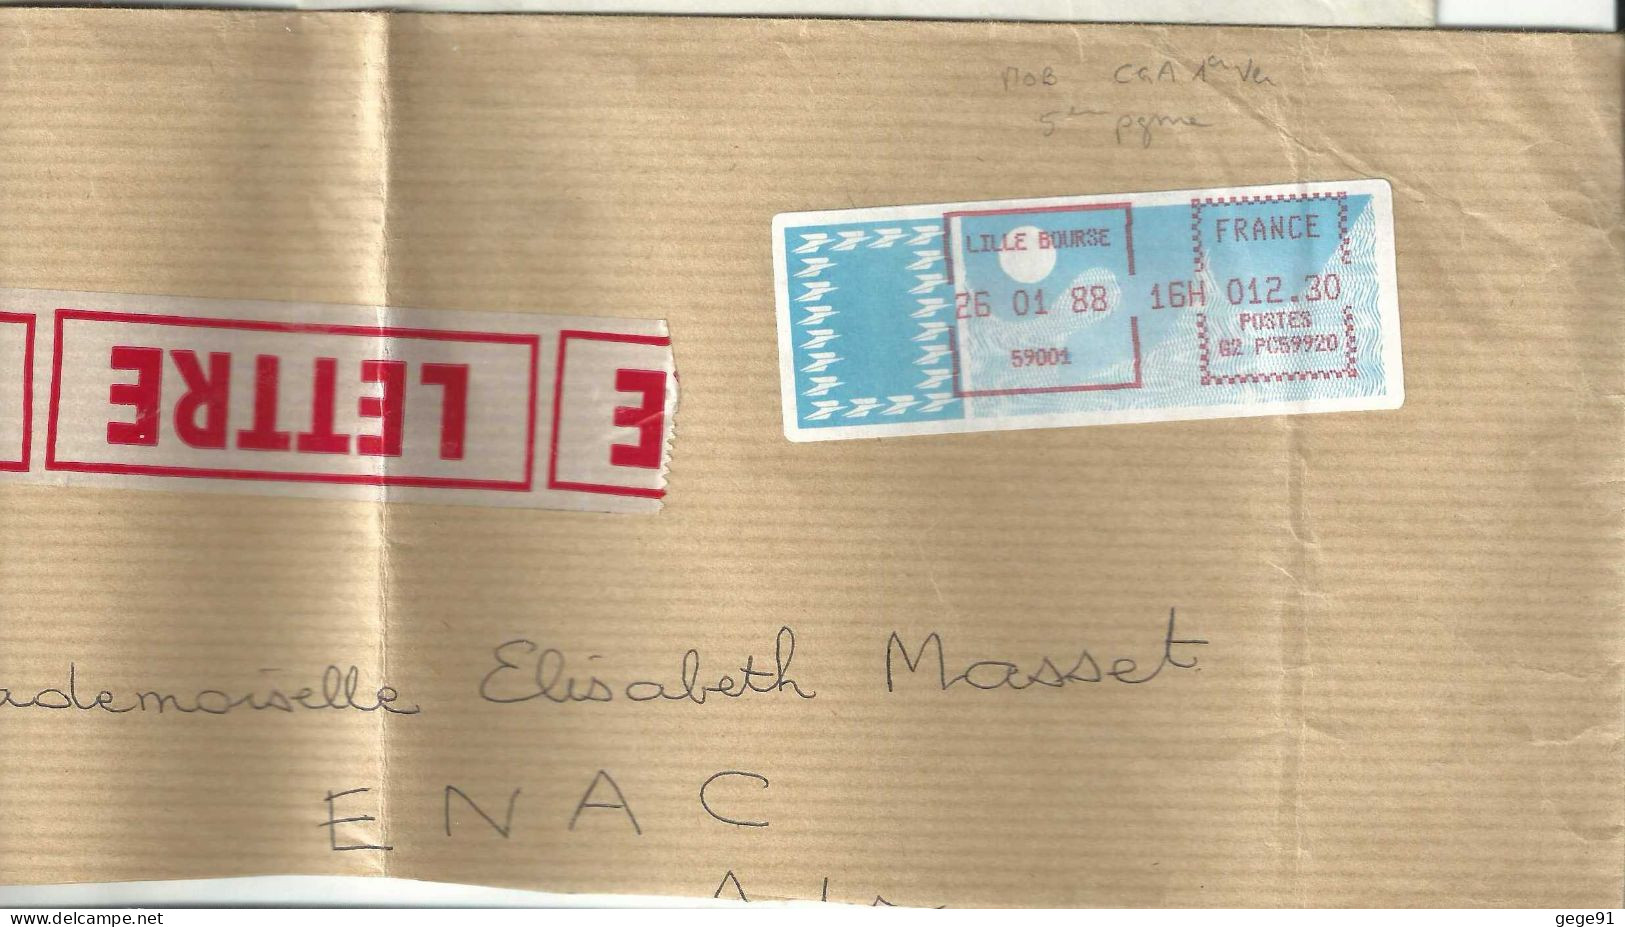 Vignette D'affranchissement - MOG - Lille Bourse - Nord - Enveloppe Réduite - 1985 Papier « Carrier »